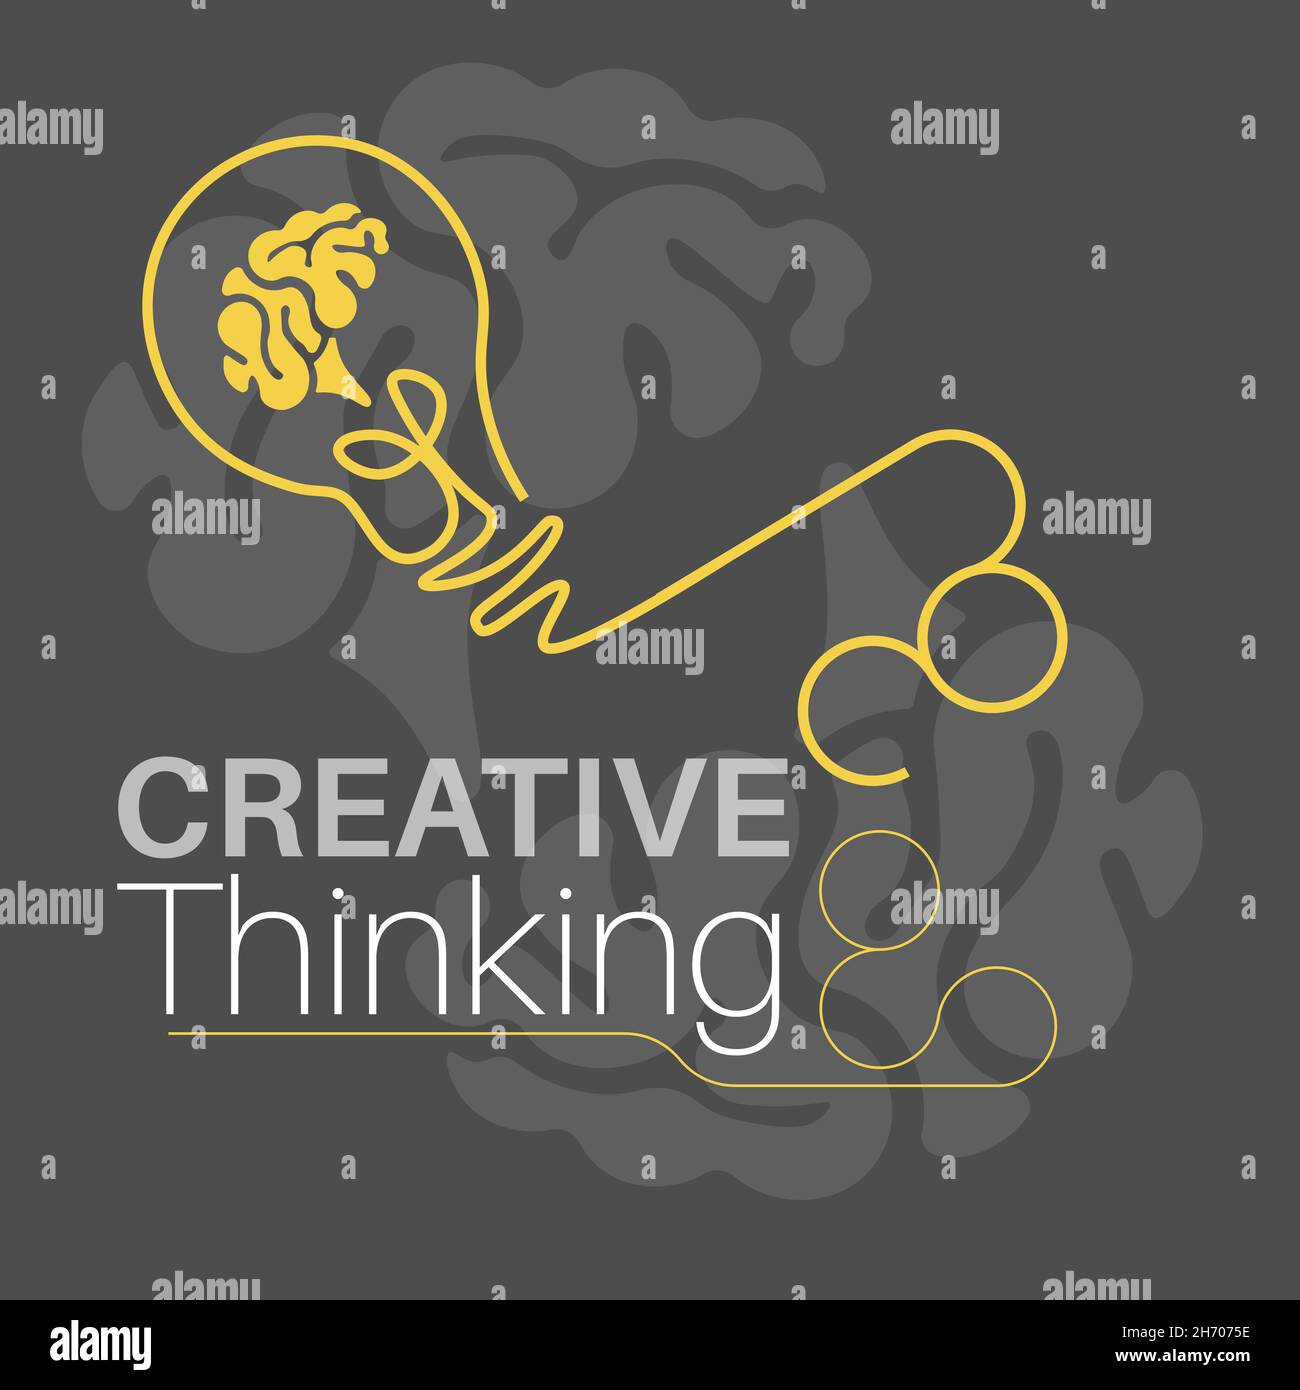 Kreatives Denkkonzept mit Glühbirne und Gehirn auf grauem Hintergrund. Symbolik der Kreativität und des kreativen Denkens. vektordarstellung. Stock Vektor